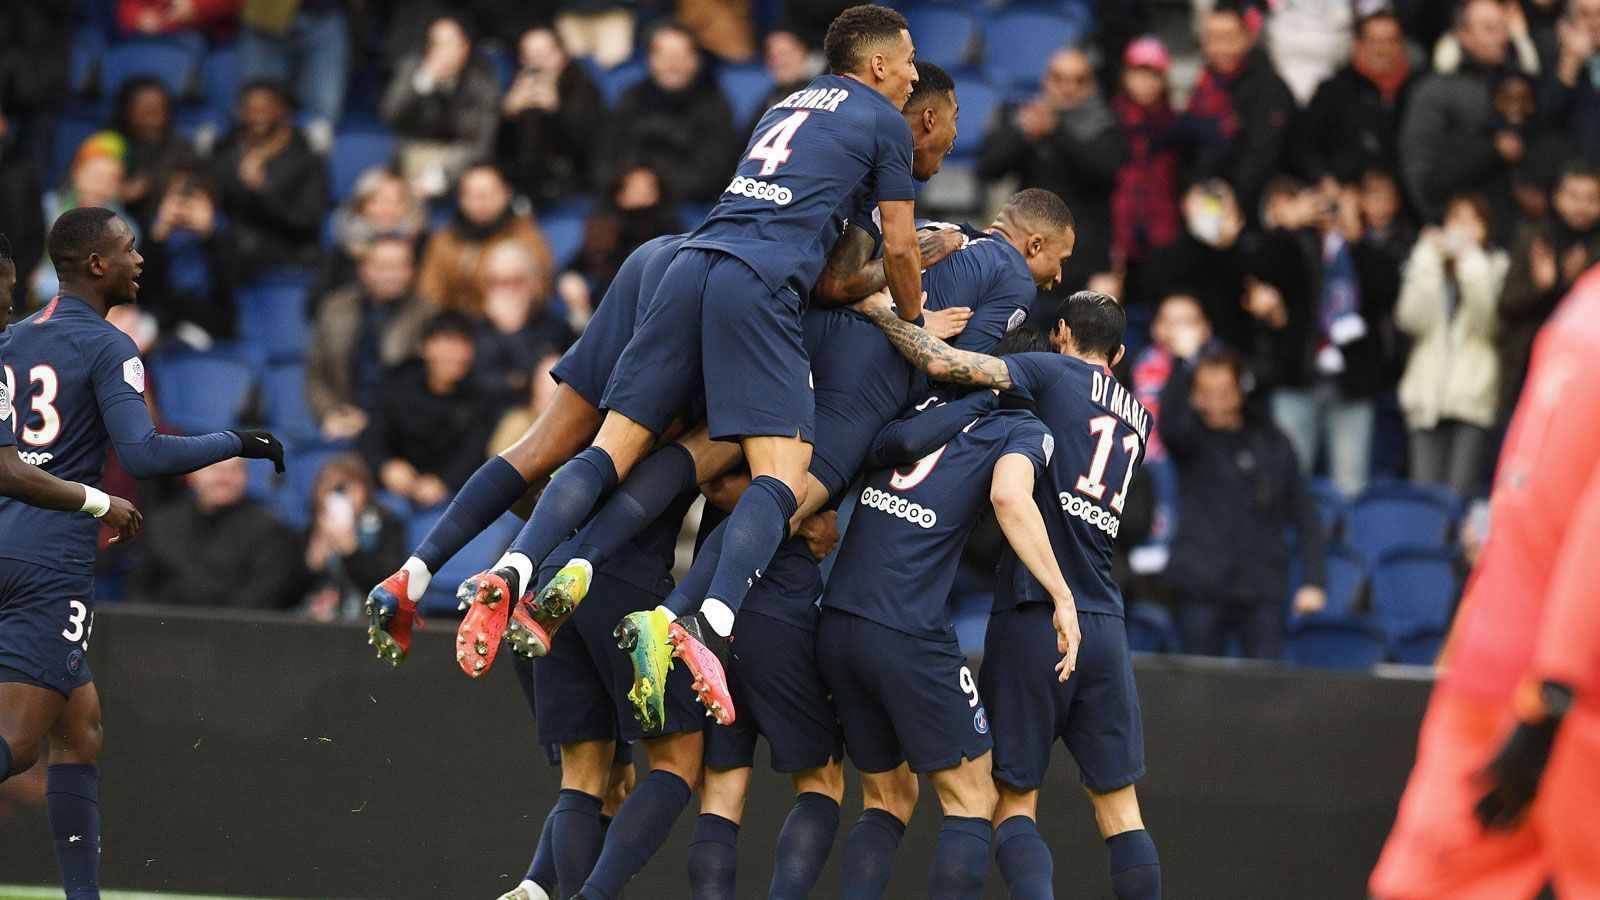 
                <strong>Frankreich: Paris Saint-Germain</strong><br>
                Mit der Ligue 1 beendete auch eine der ganz großen Ligen ihre Saison nicht regulär. In Frankreich waren zum Zeitpunkt der Unterbrechung 28 Spieltage absolviert, zehn hätten also noch ausgestanden. Paris St. Germain thronte - obwohl eine Partie weniger ausgetragen - mit zwölf Punkten Vorsprung auf Olympique Marseille an der Spitze und gewann damit die siebte Meisterschaft in den vergangenen acht Jahren und die neunte insgesamt.
              